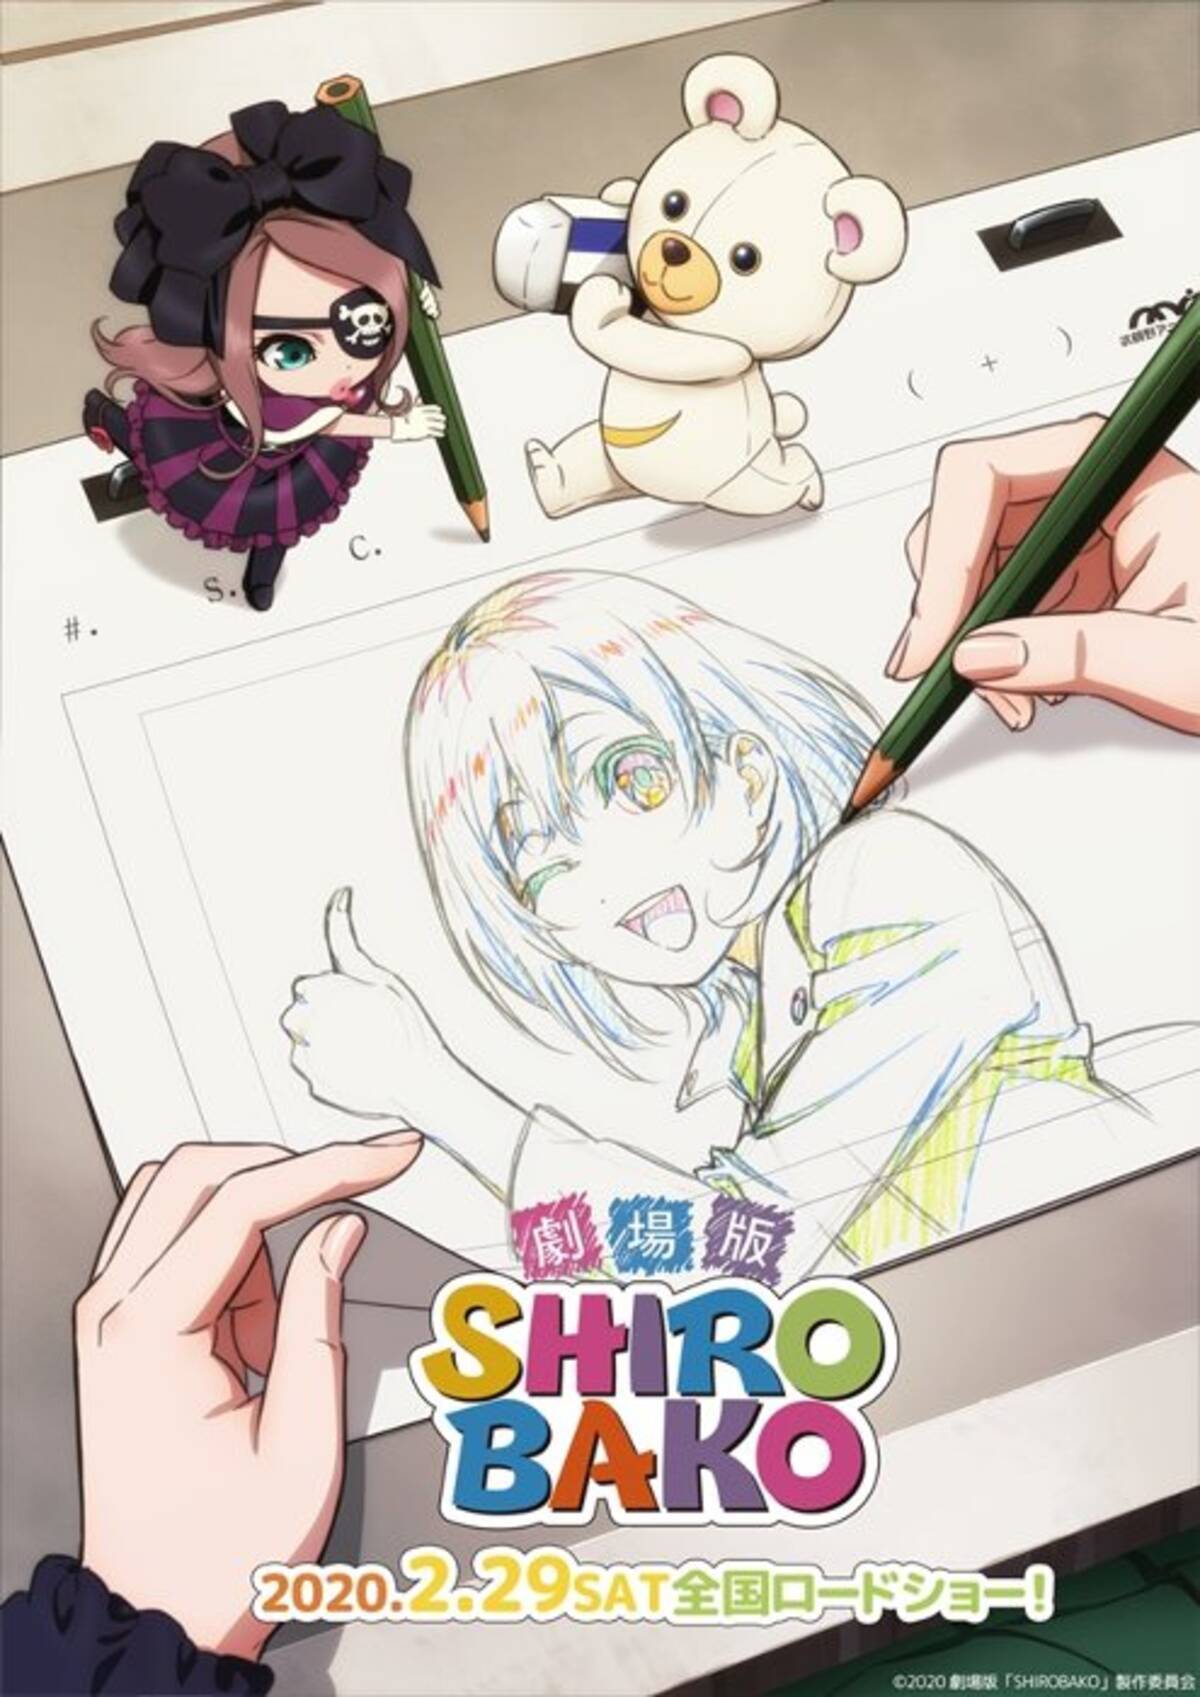 劇場版 Shirobako 公開日は2月29日 予告編 新ビジュアルも 19年10月24日 エキサイトニュース